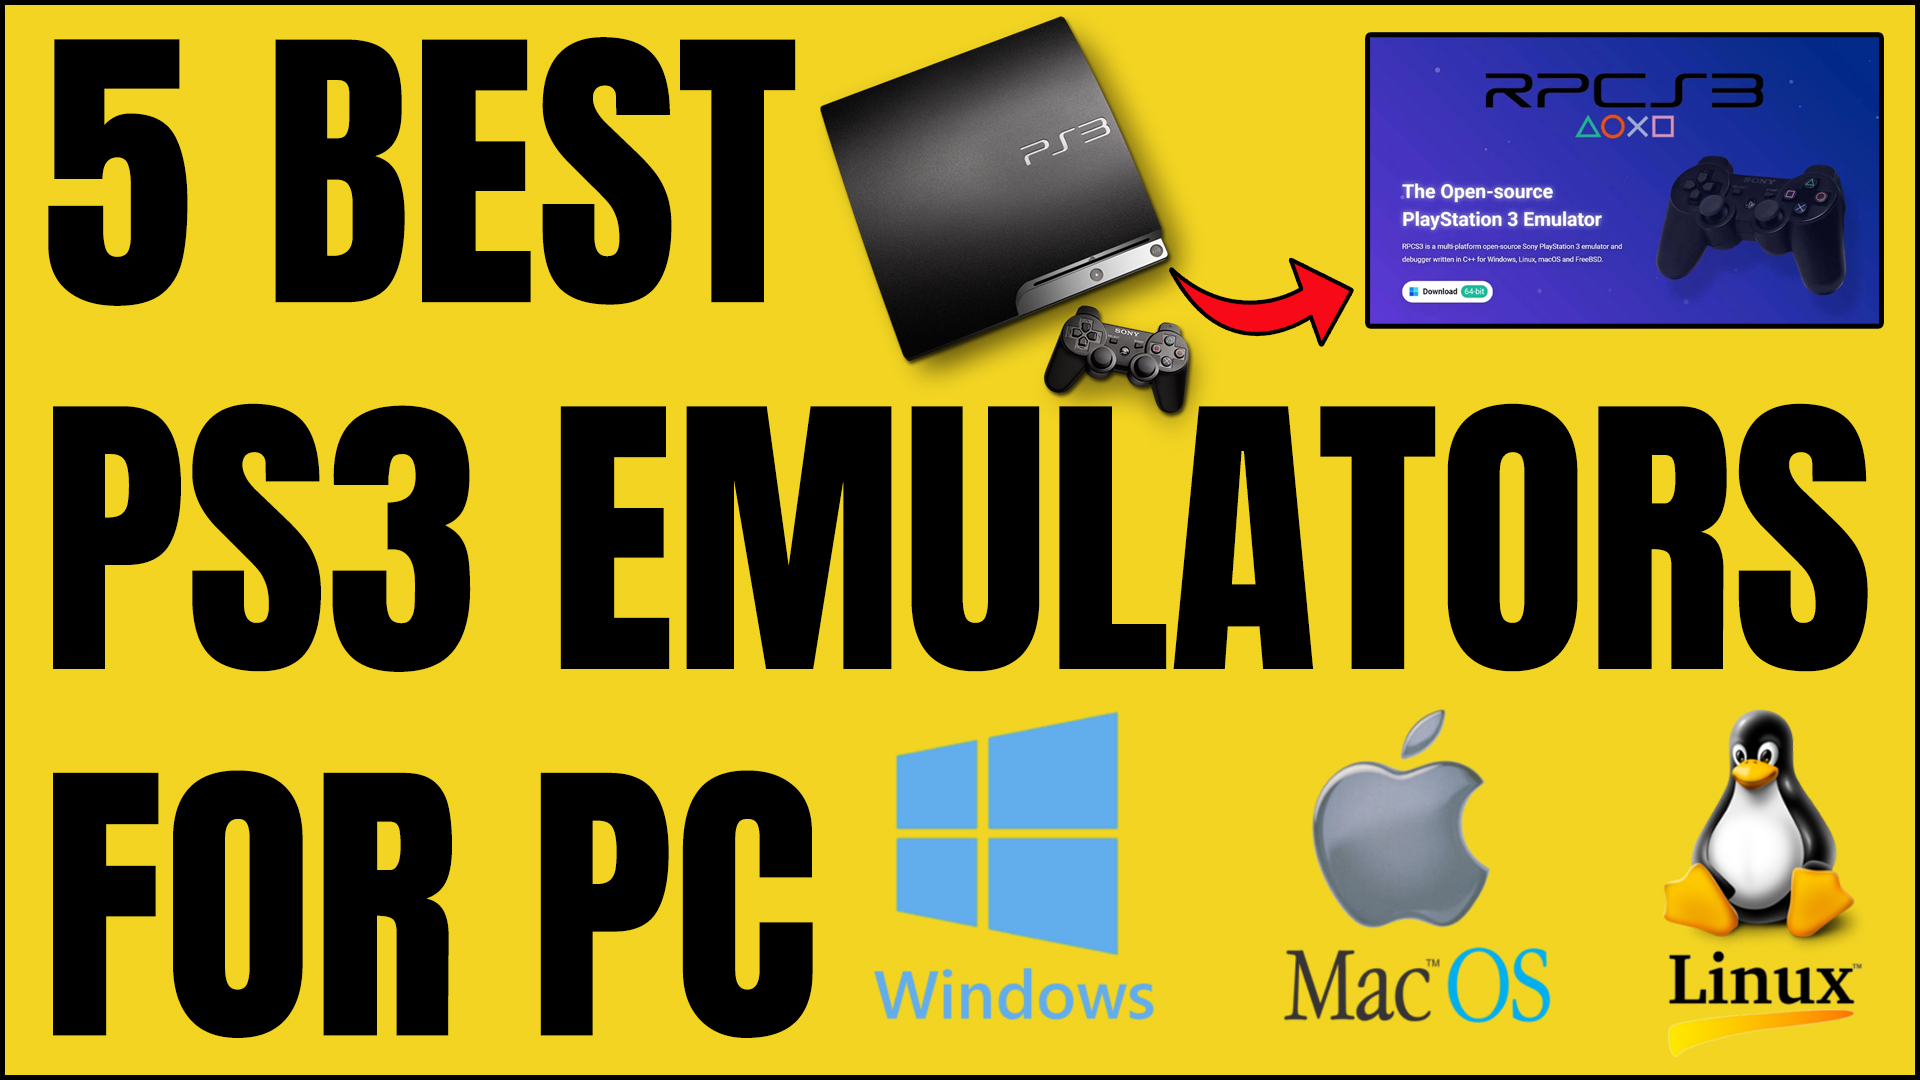 5 Best PS3 Emulators For PC/Windows